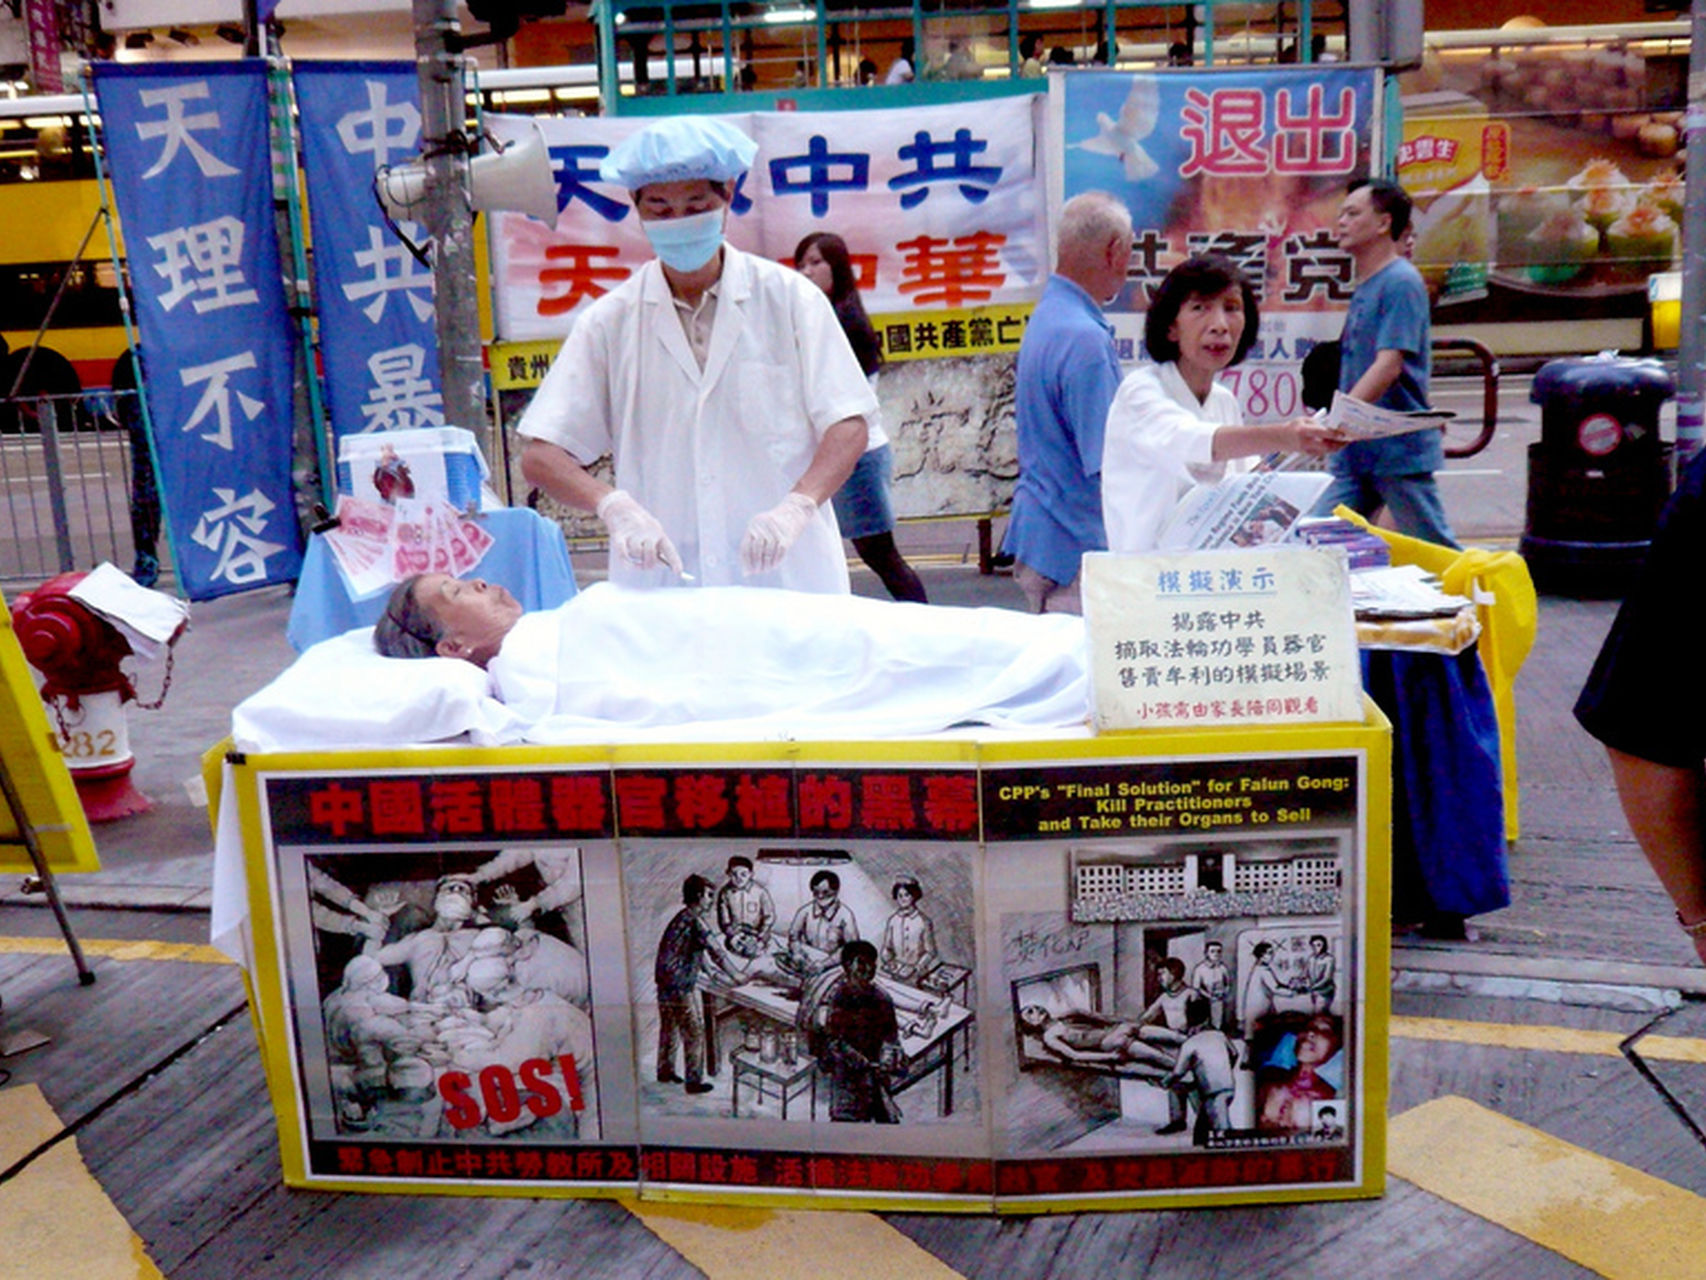 Tráfico de órganos en China ¡Alguien debe hacer algo!